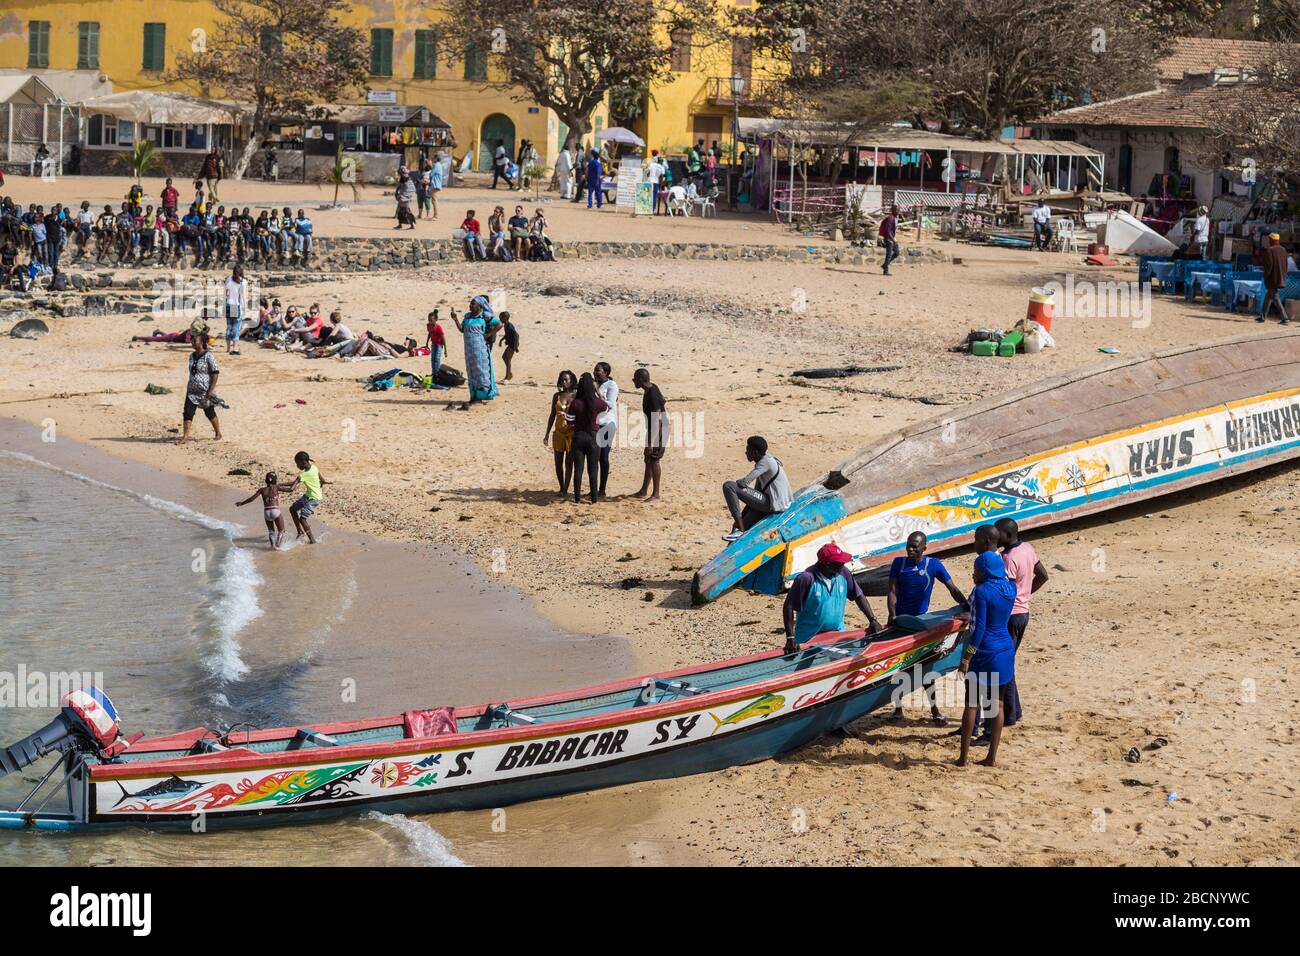 Personnes sur la plage à Gorée, Sénégal Banque D'Images